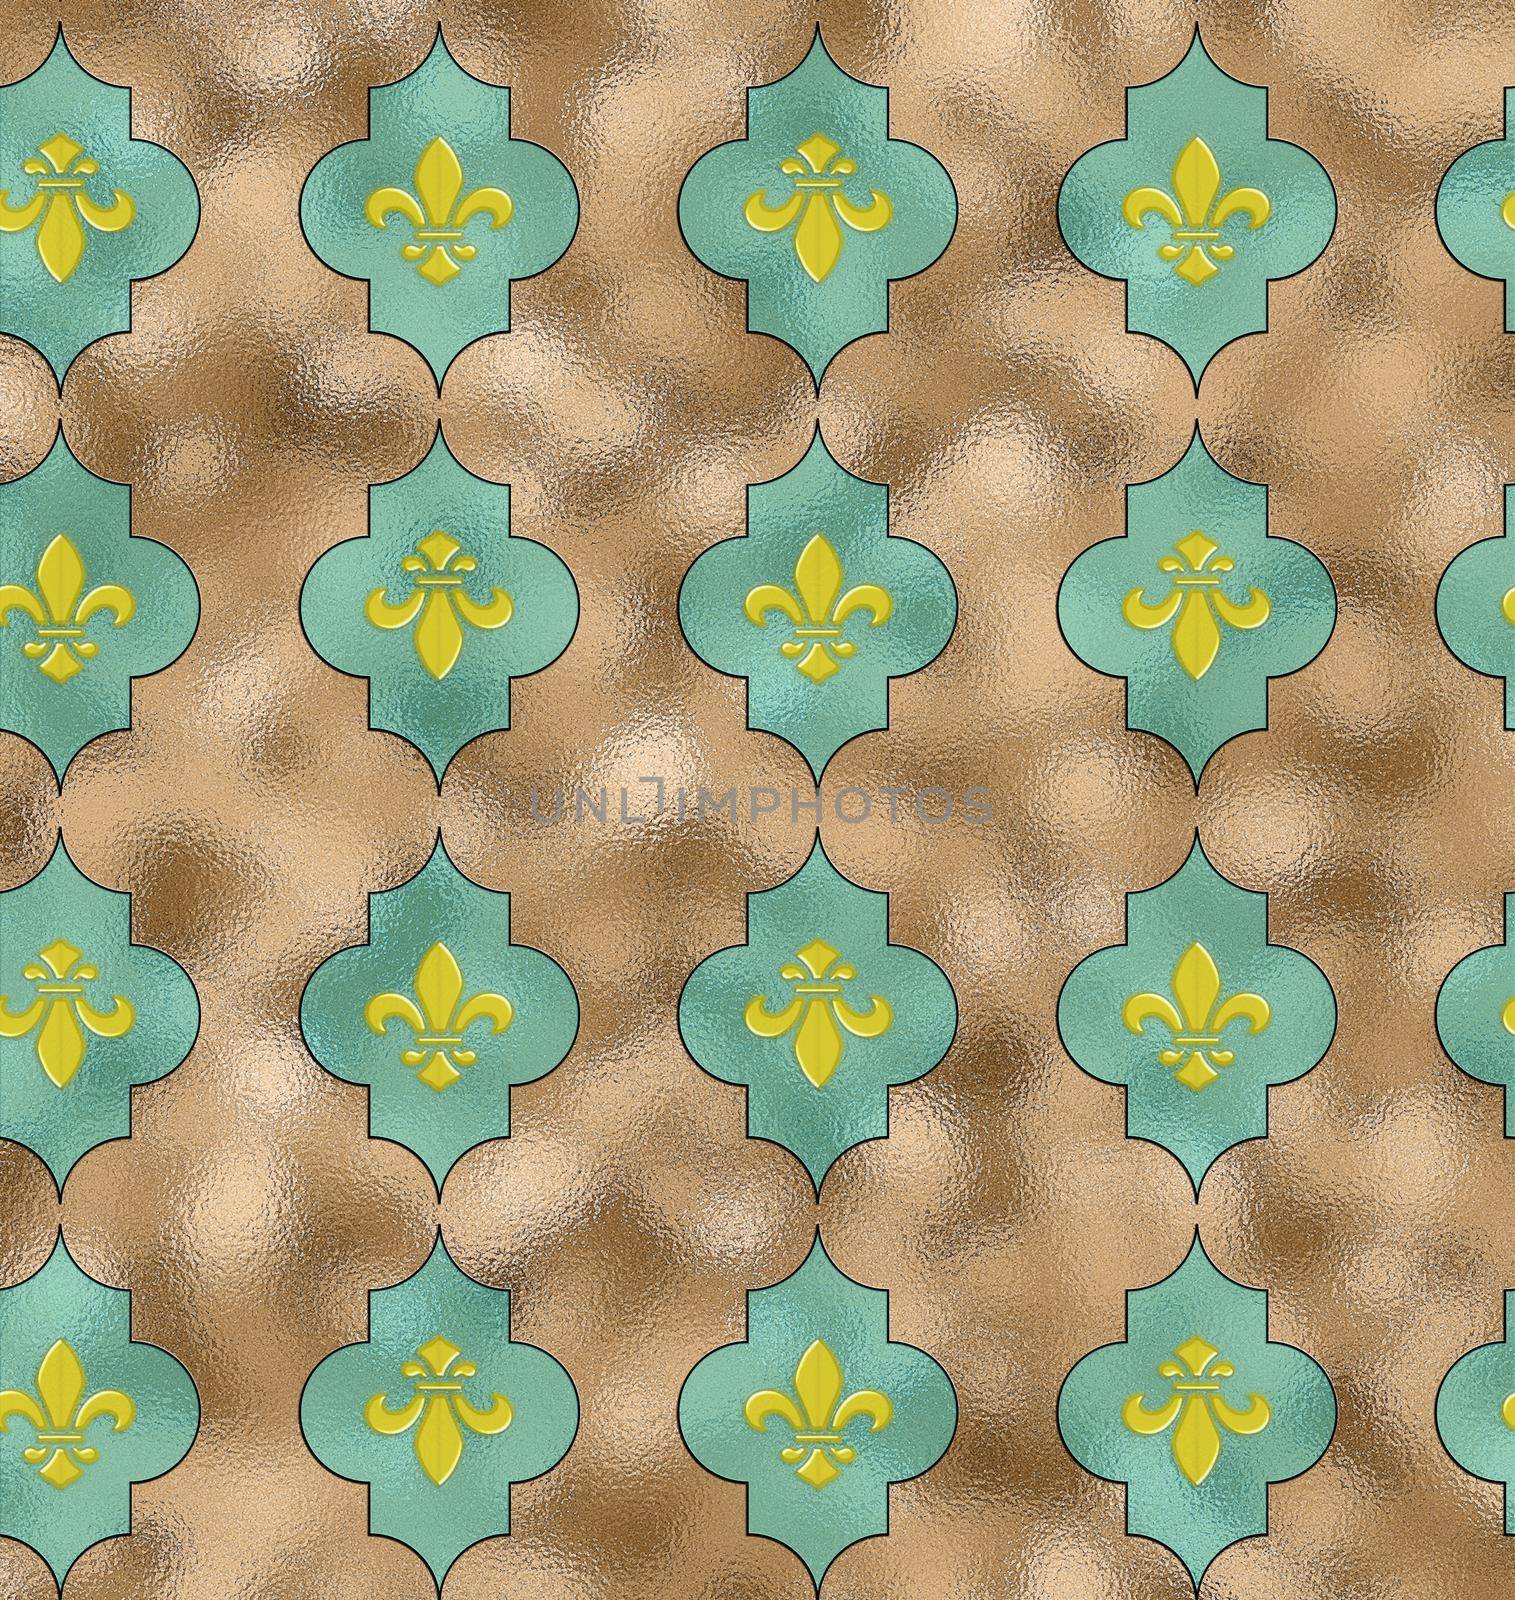 Royal Lily Fleur de Lis Seamless Pattern by NelliPolk